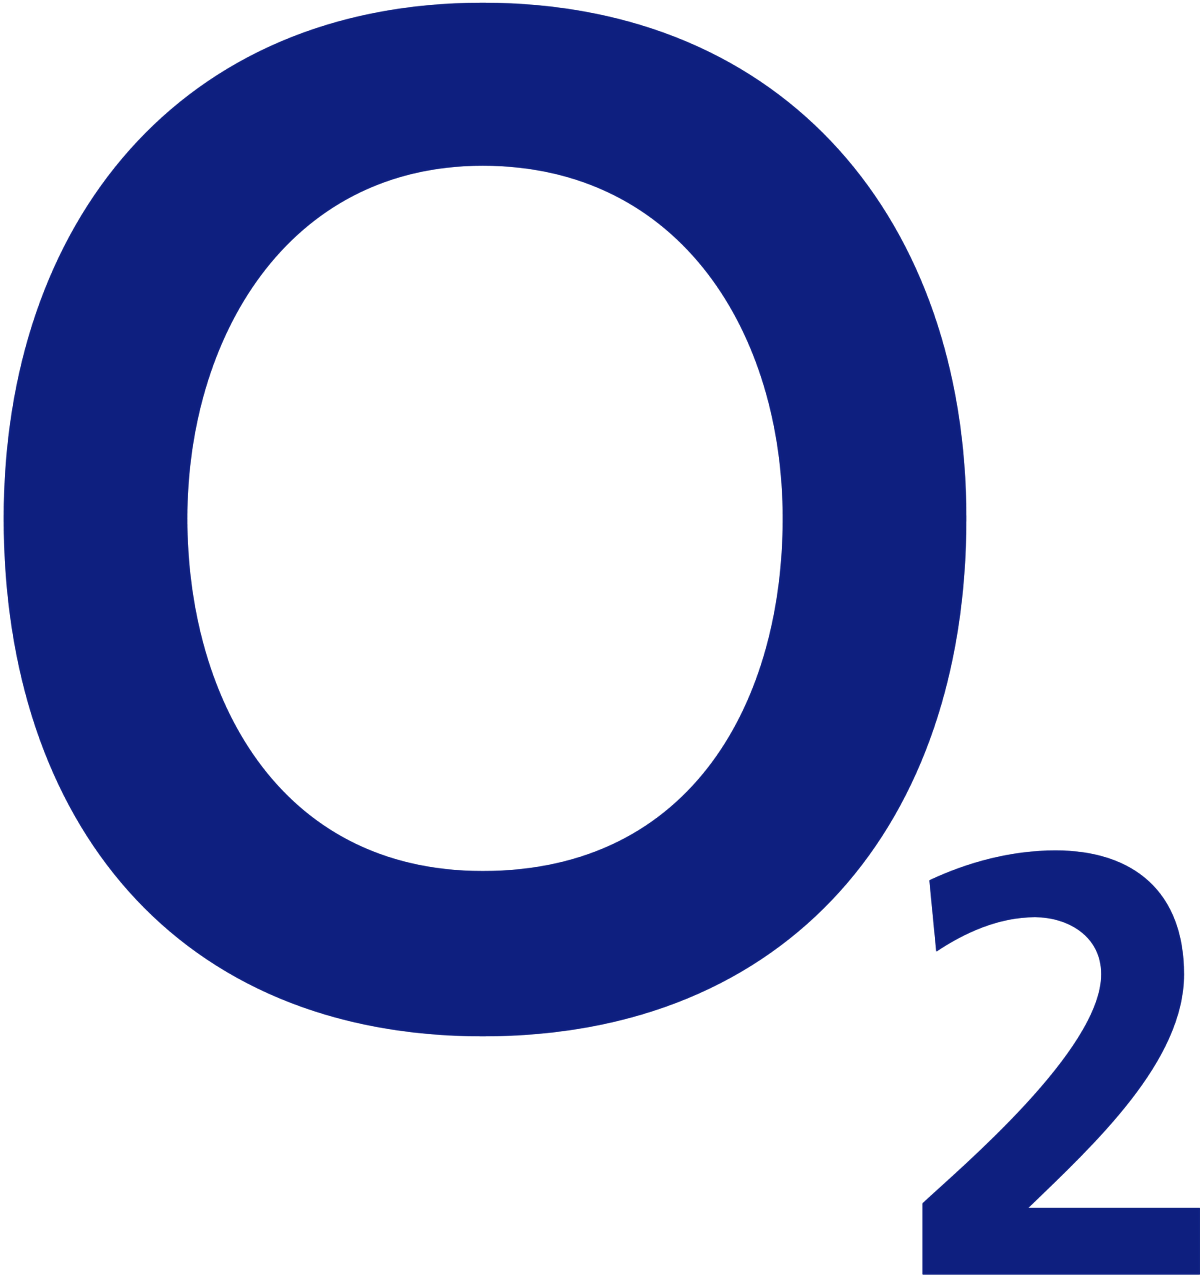 O2 Slovakia | ContactCenterWorld.com